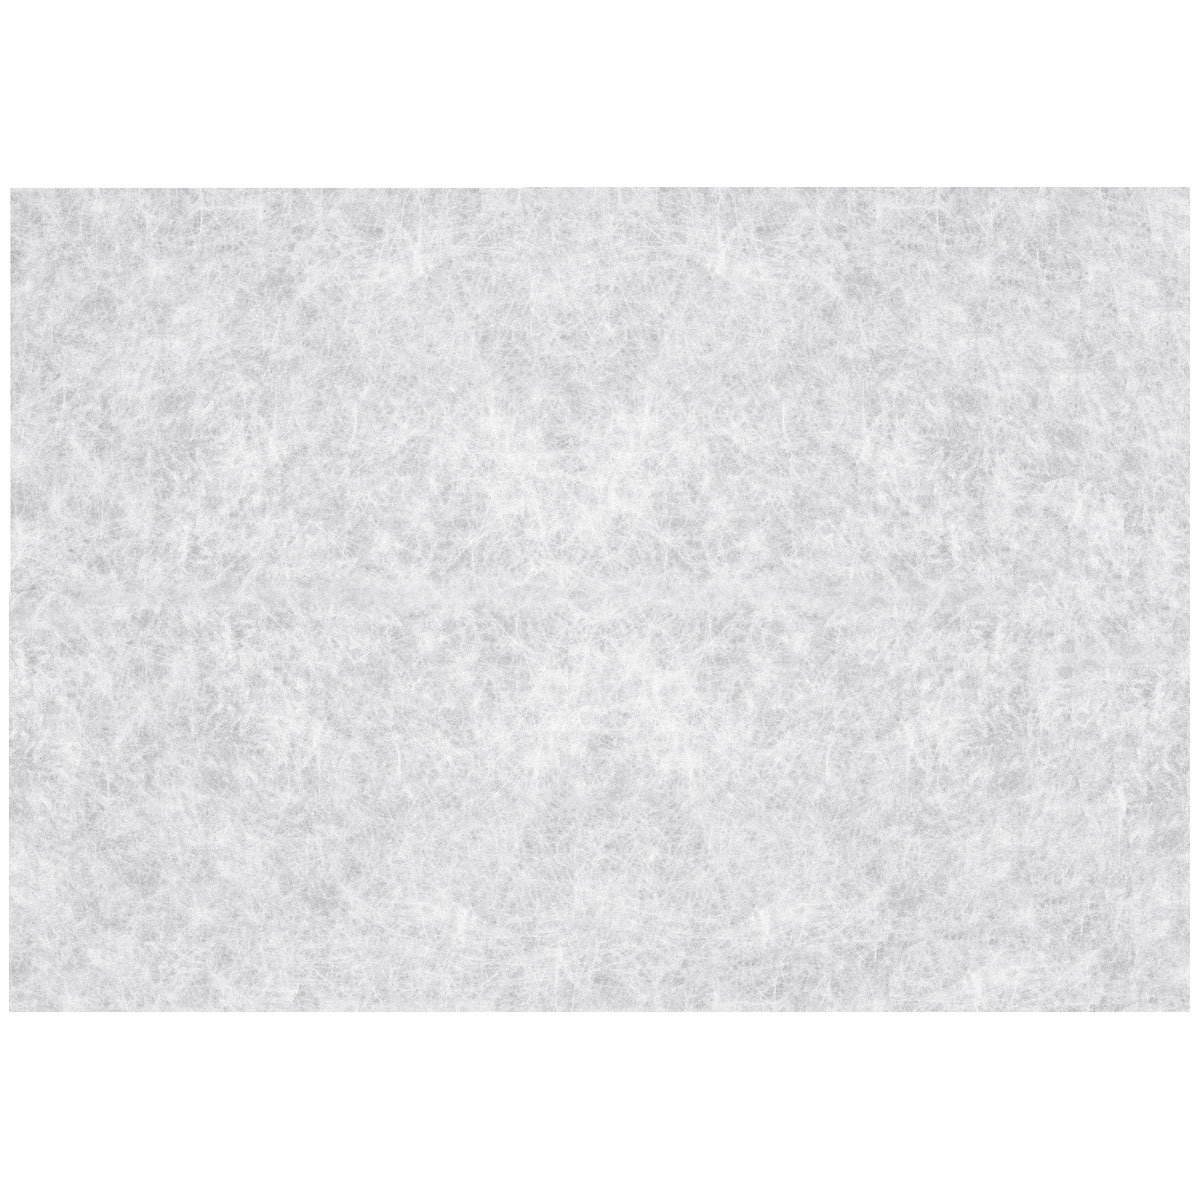 Klebefolie weiß matt 45 x 150 cm